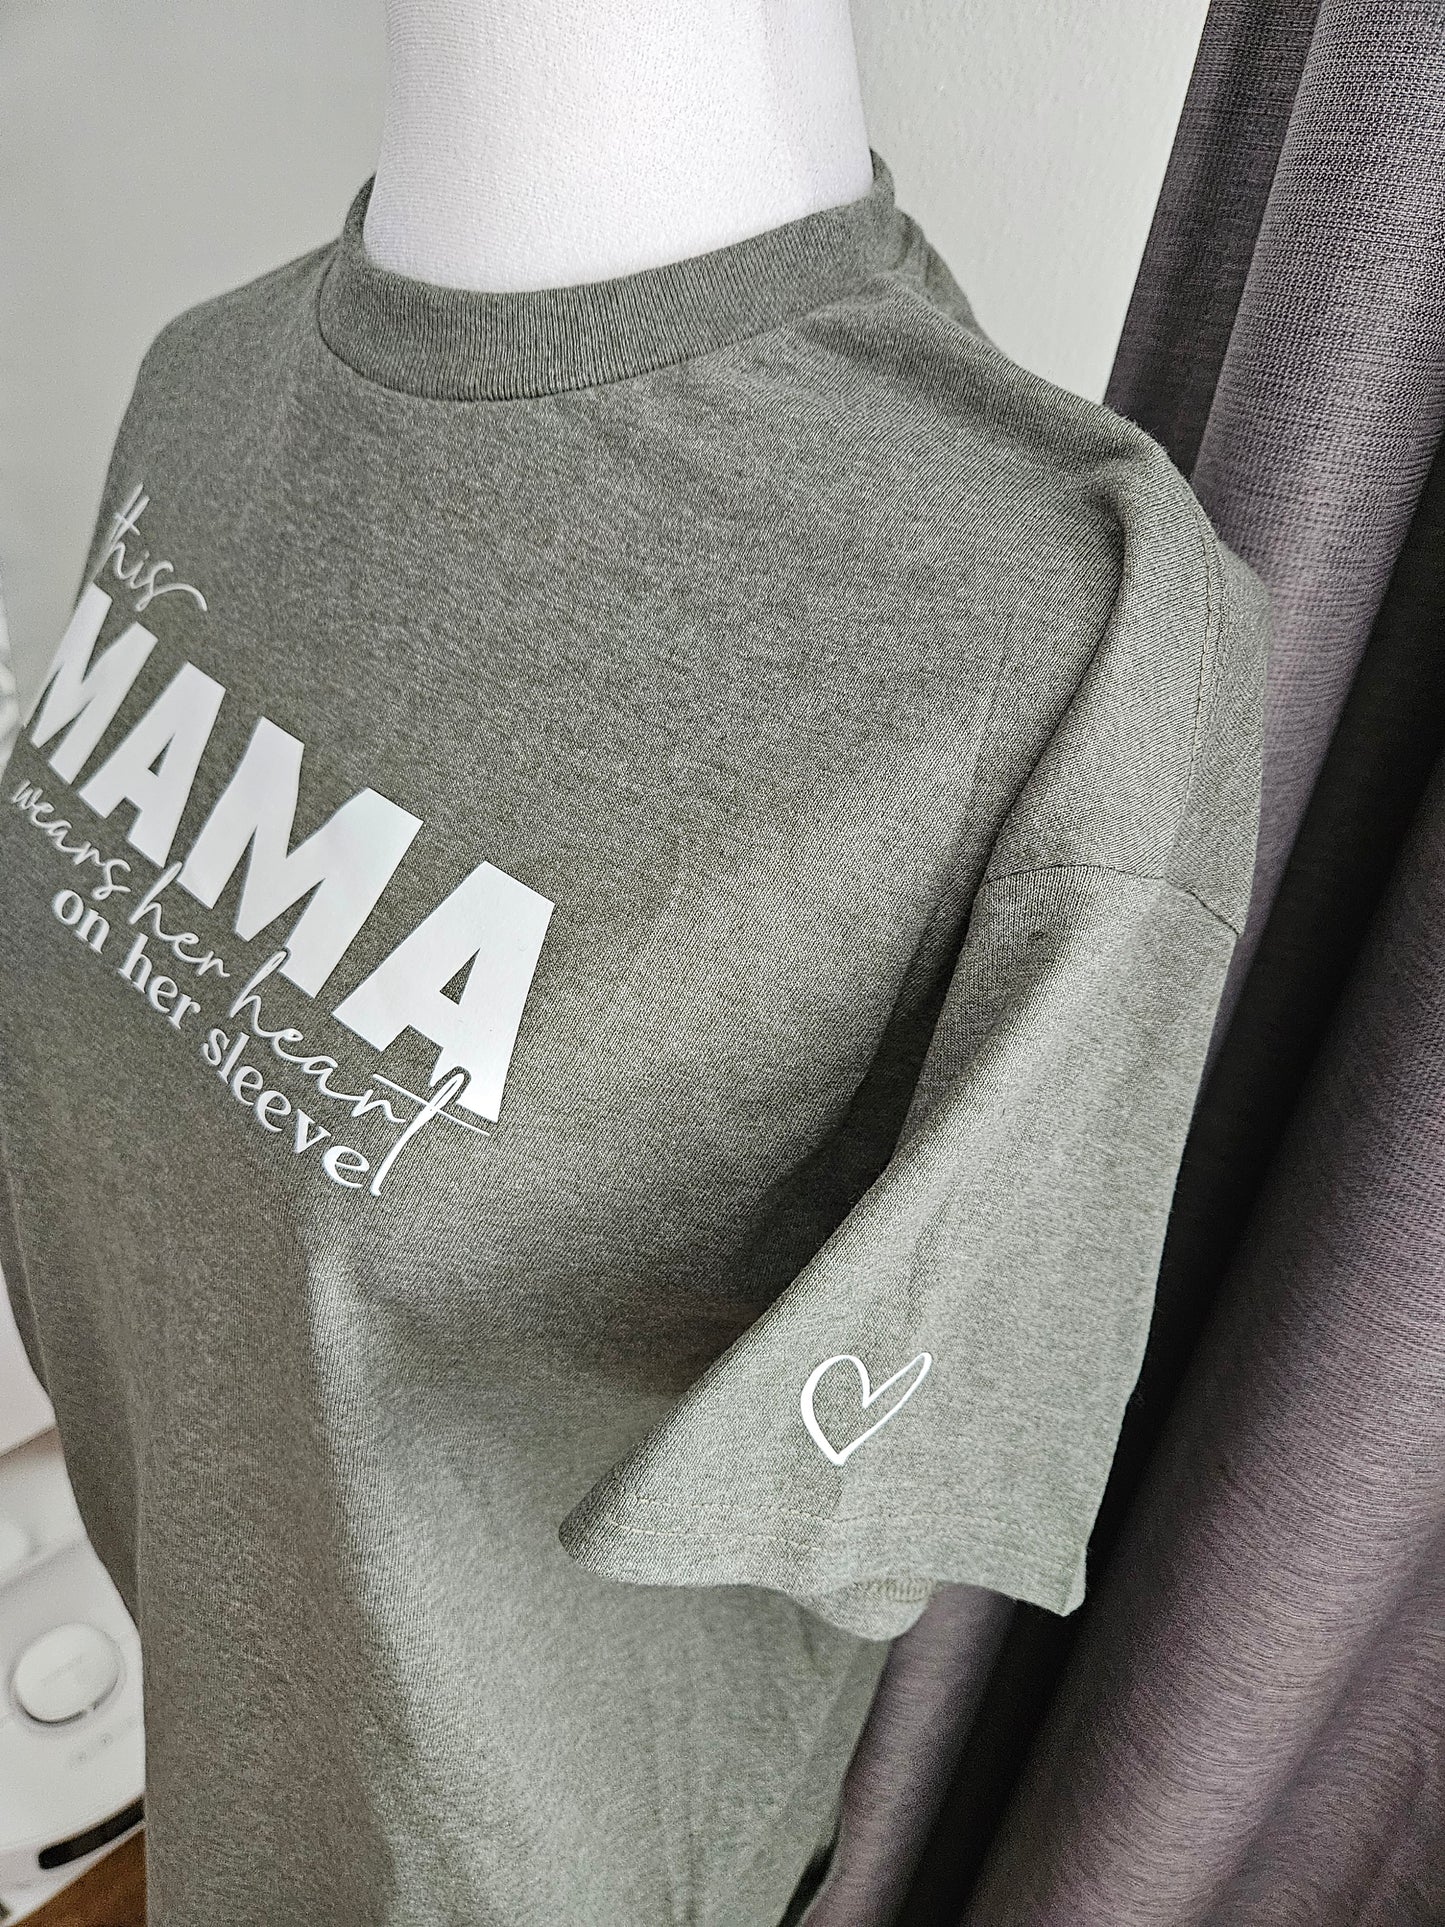 This mama 💜 t- shirt